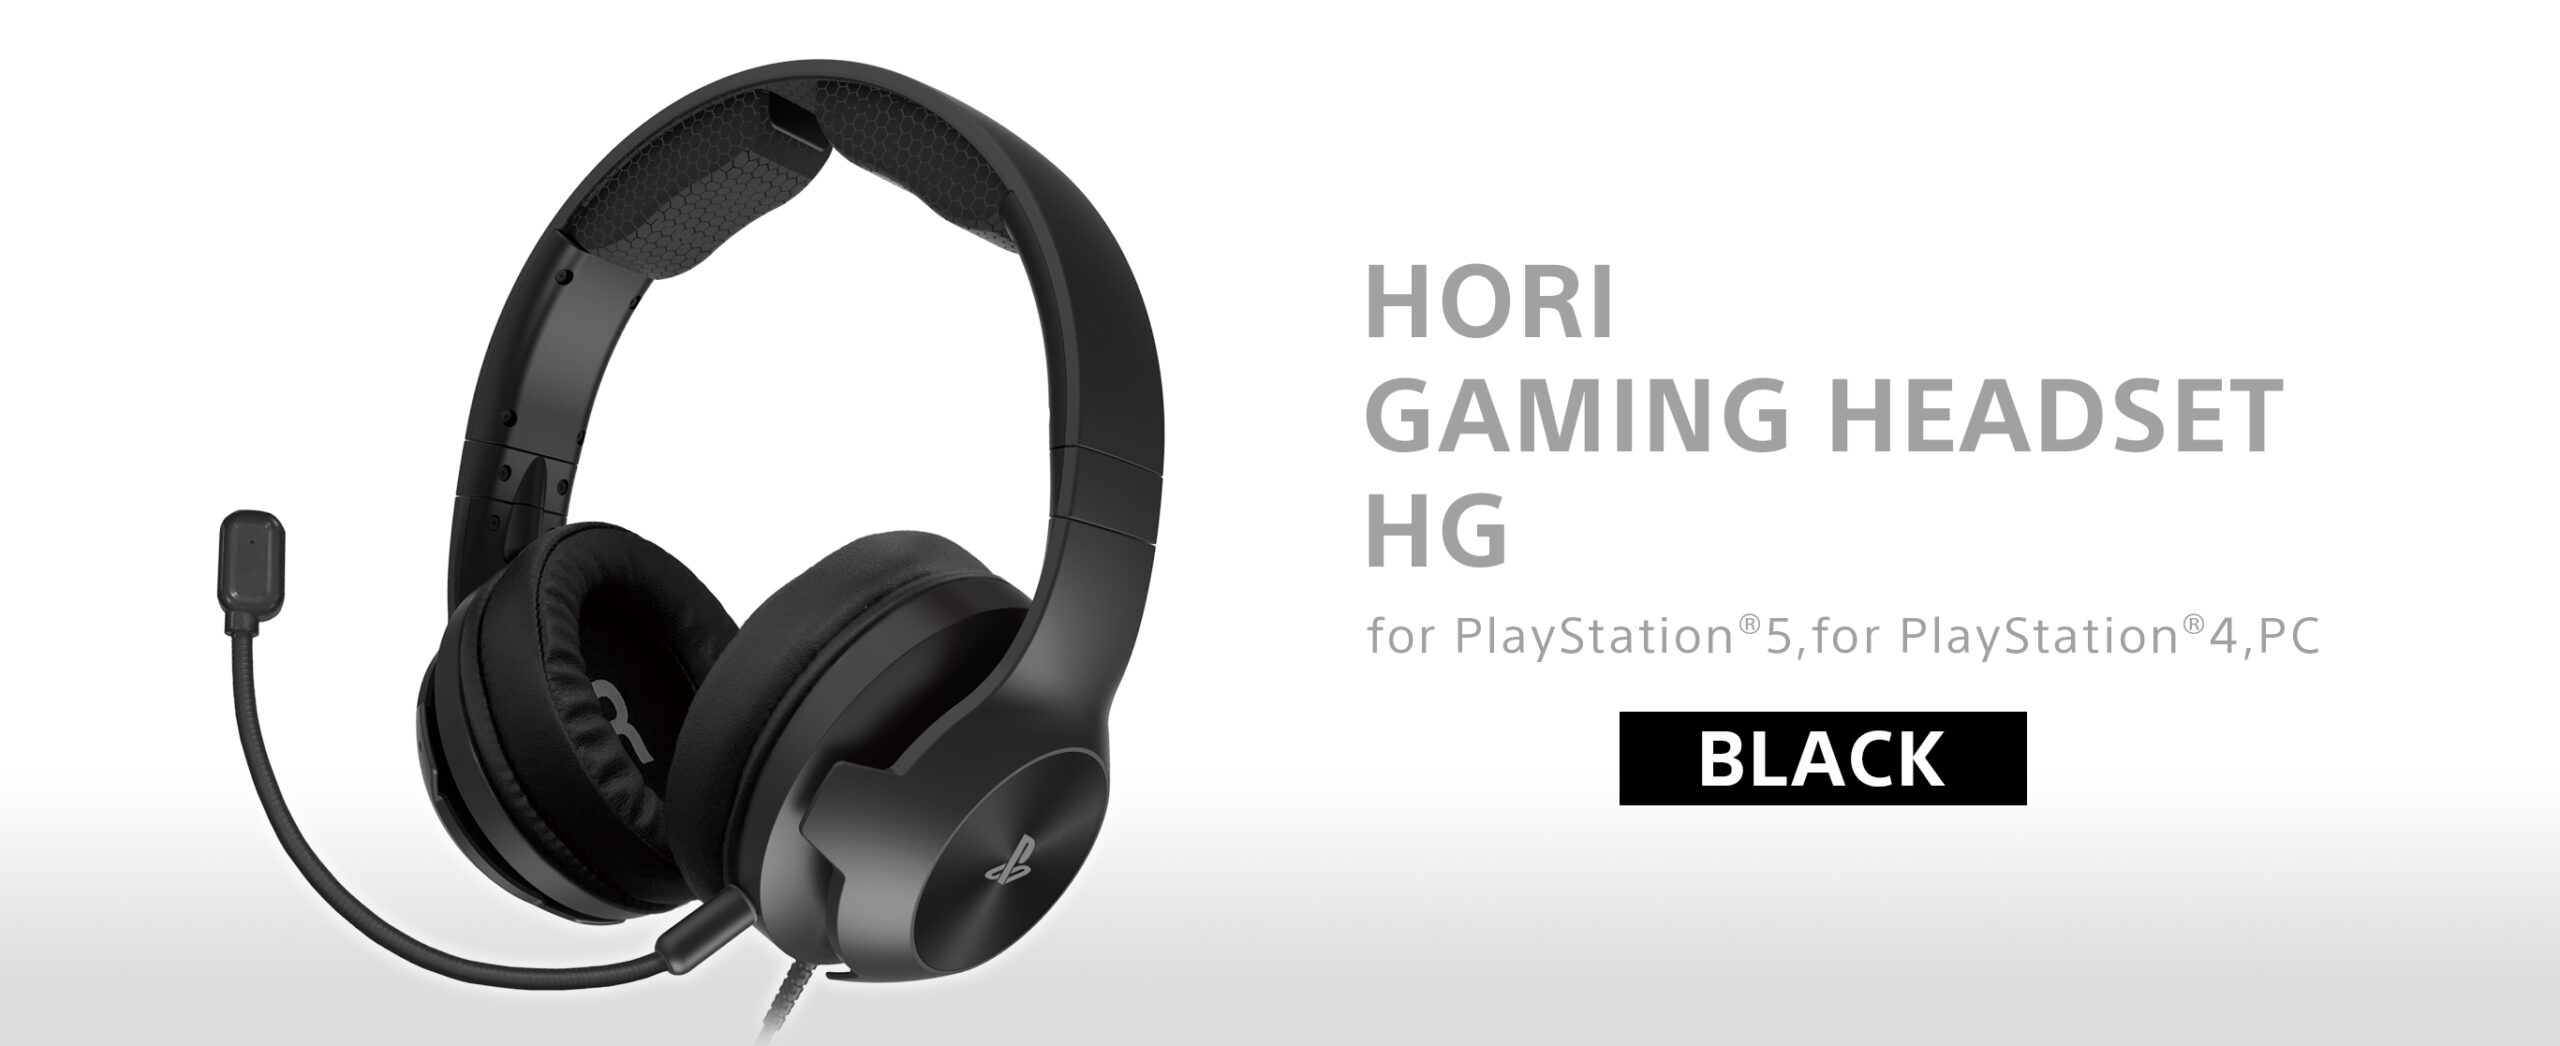 株式会社 HORI | ホリゲーミングヘッドセット ハイグレード for PlayStation®5 , PlayStation®4 , PC ブラック